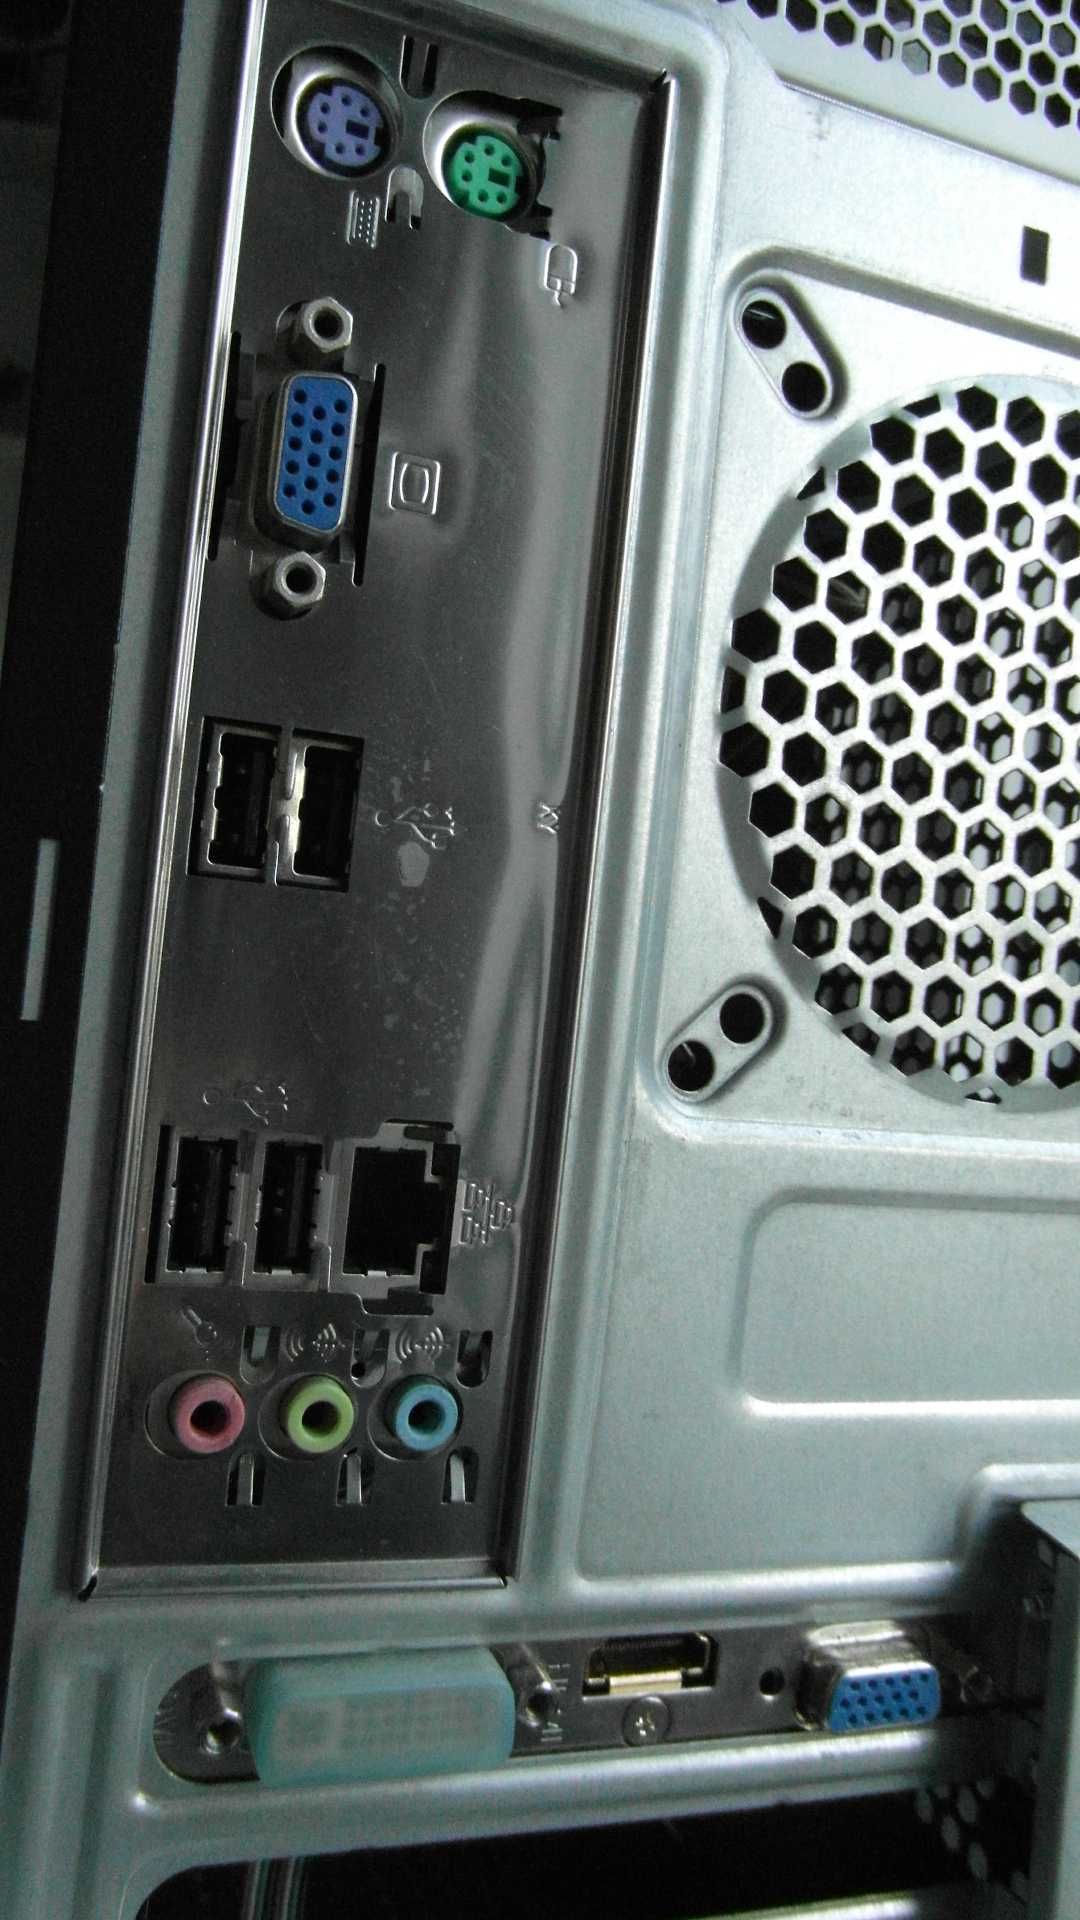 Komputer stacjonarny_działa /kompletny_RAM 2GB_Intel Pentium 4 / 3GHz